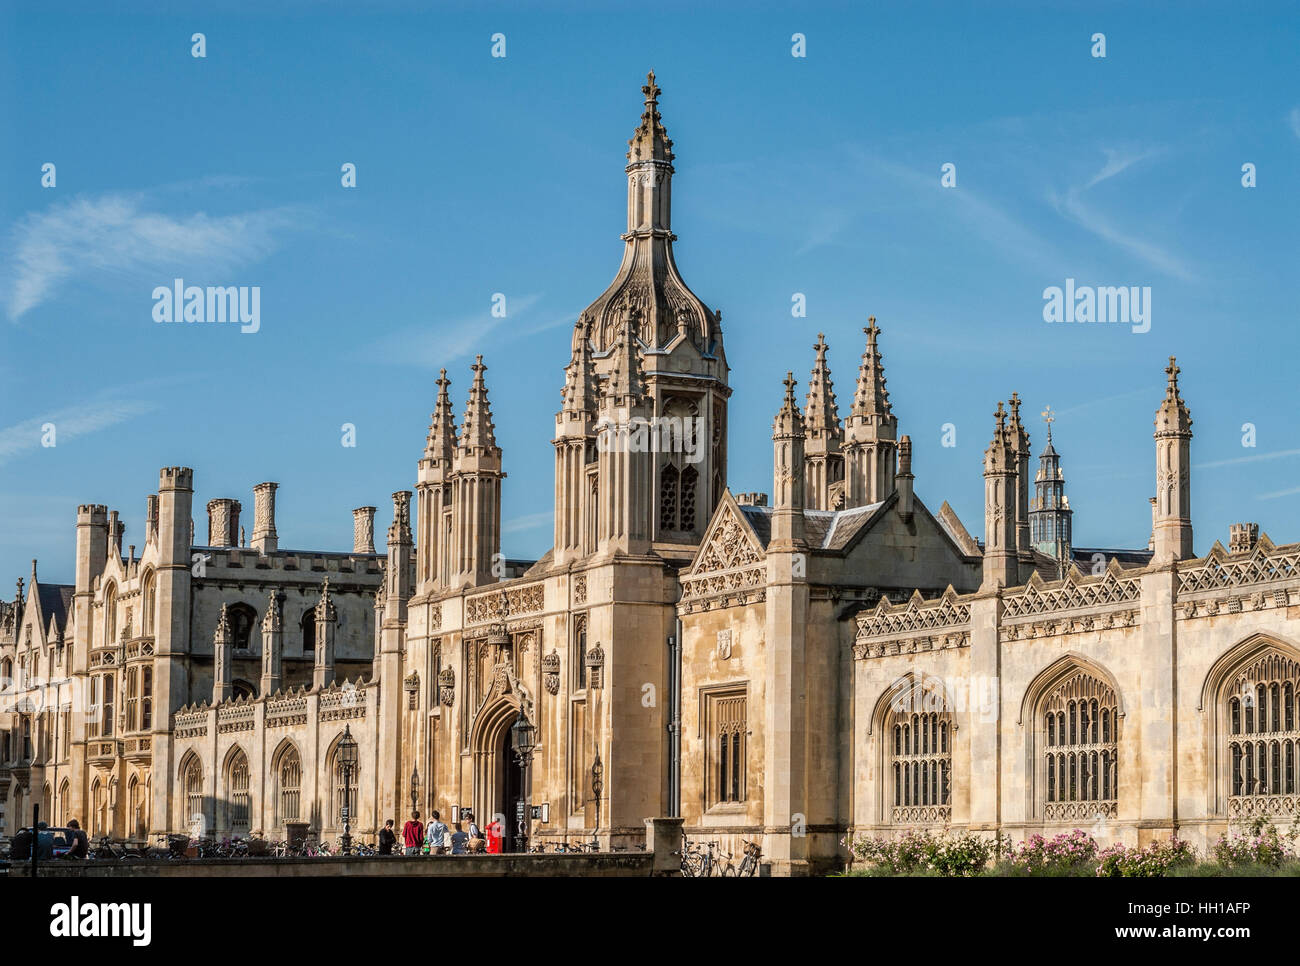 King's College Gate House à l'Université de Cambridge, Angleterre Banque D'Images